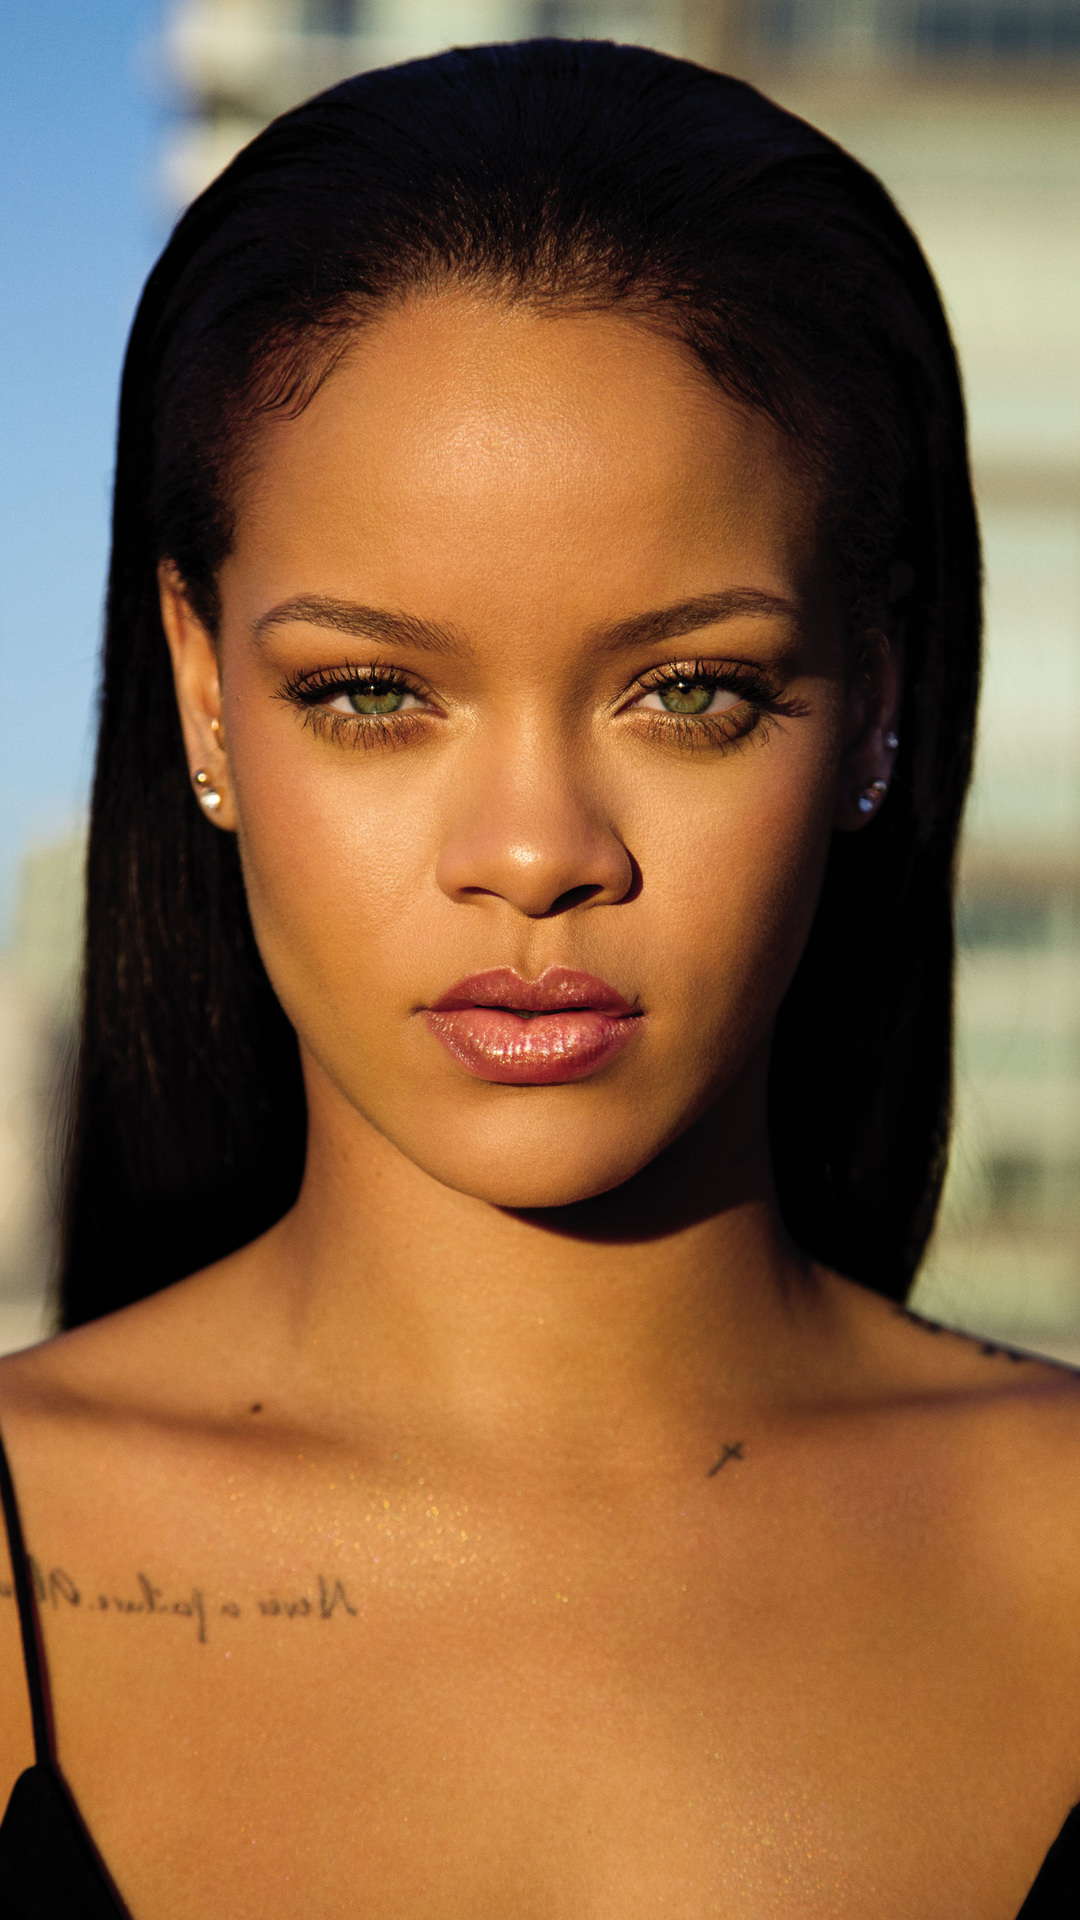 Handy-Wallpaper Musik, Rihanna, Sänger, Barbados kostenlos herunterladen.